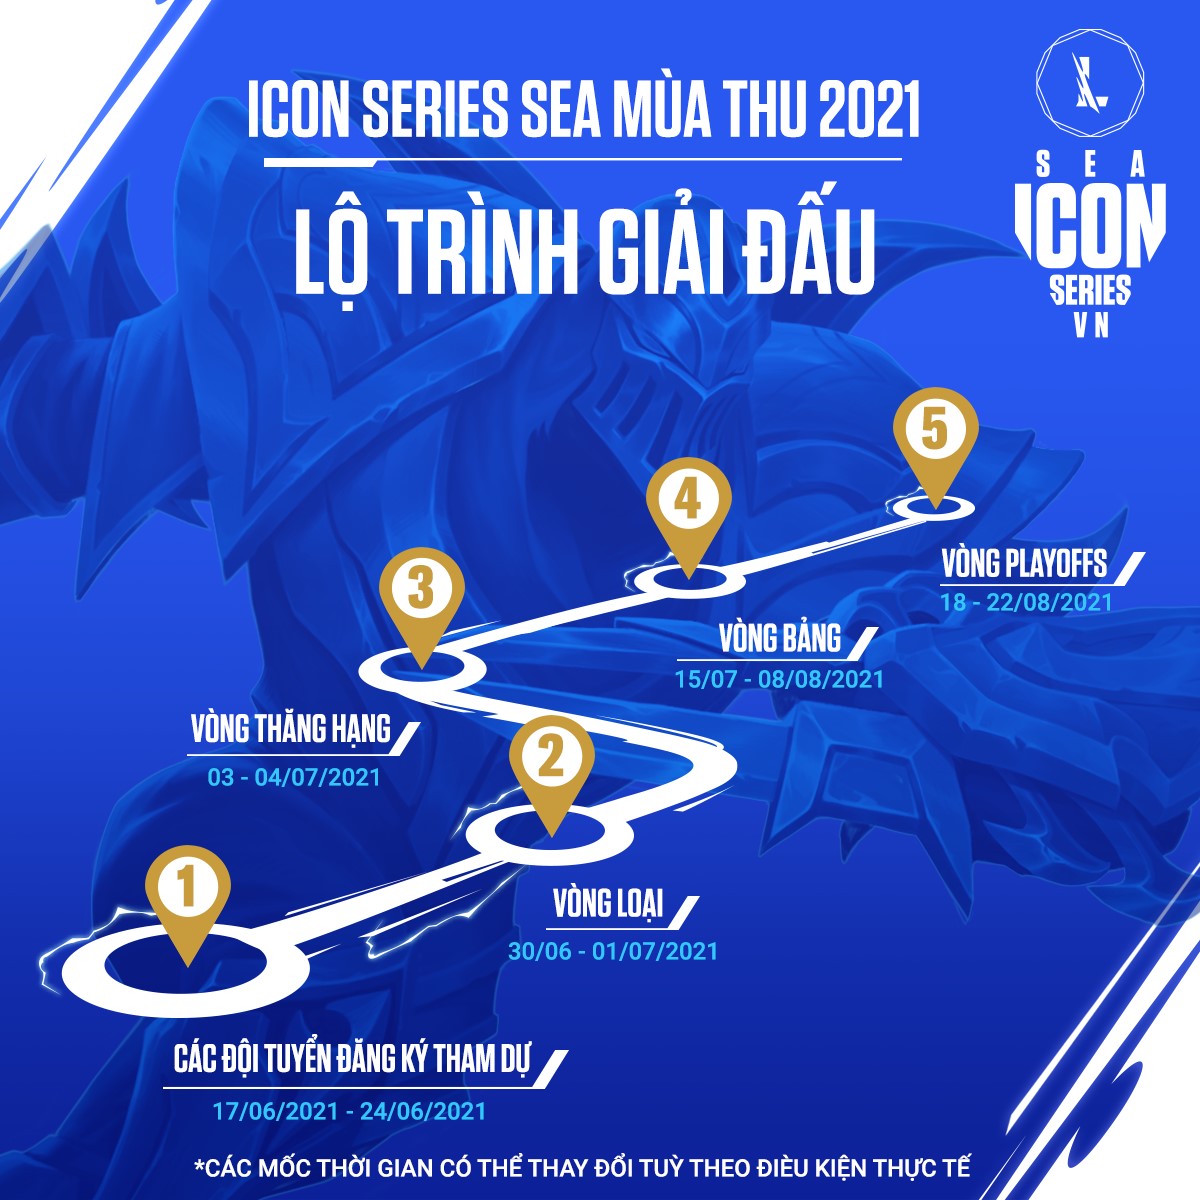 Icon Series SEA mùa Thu 2021 khu vực Việt Nam ấn định ngày khởi tranh - Ảnh 2